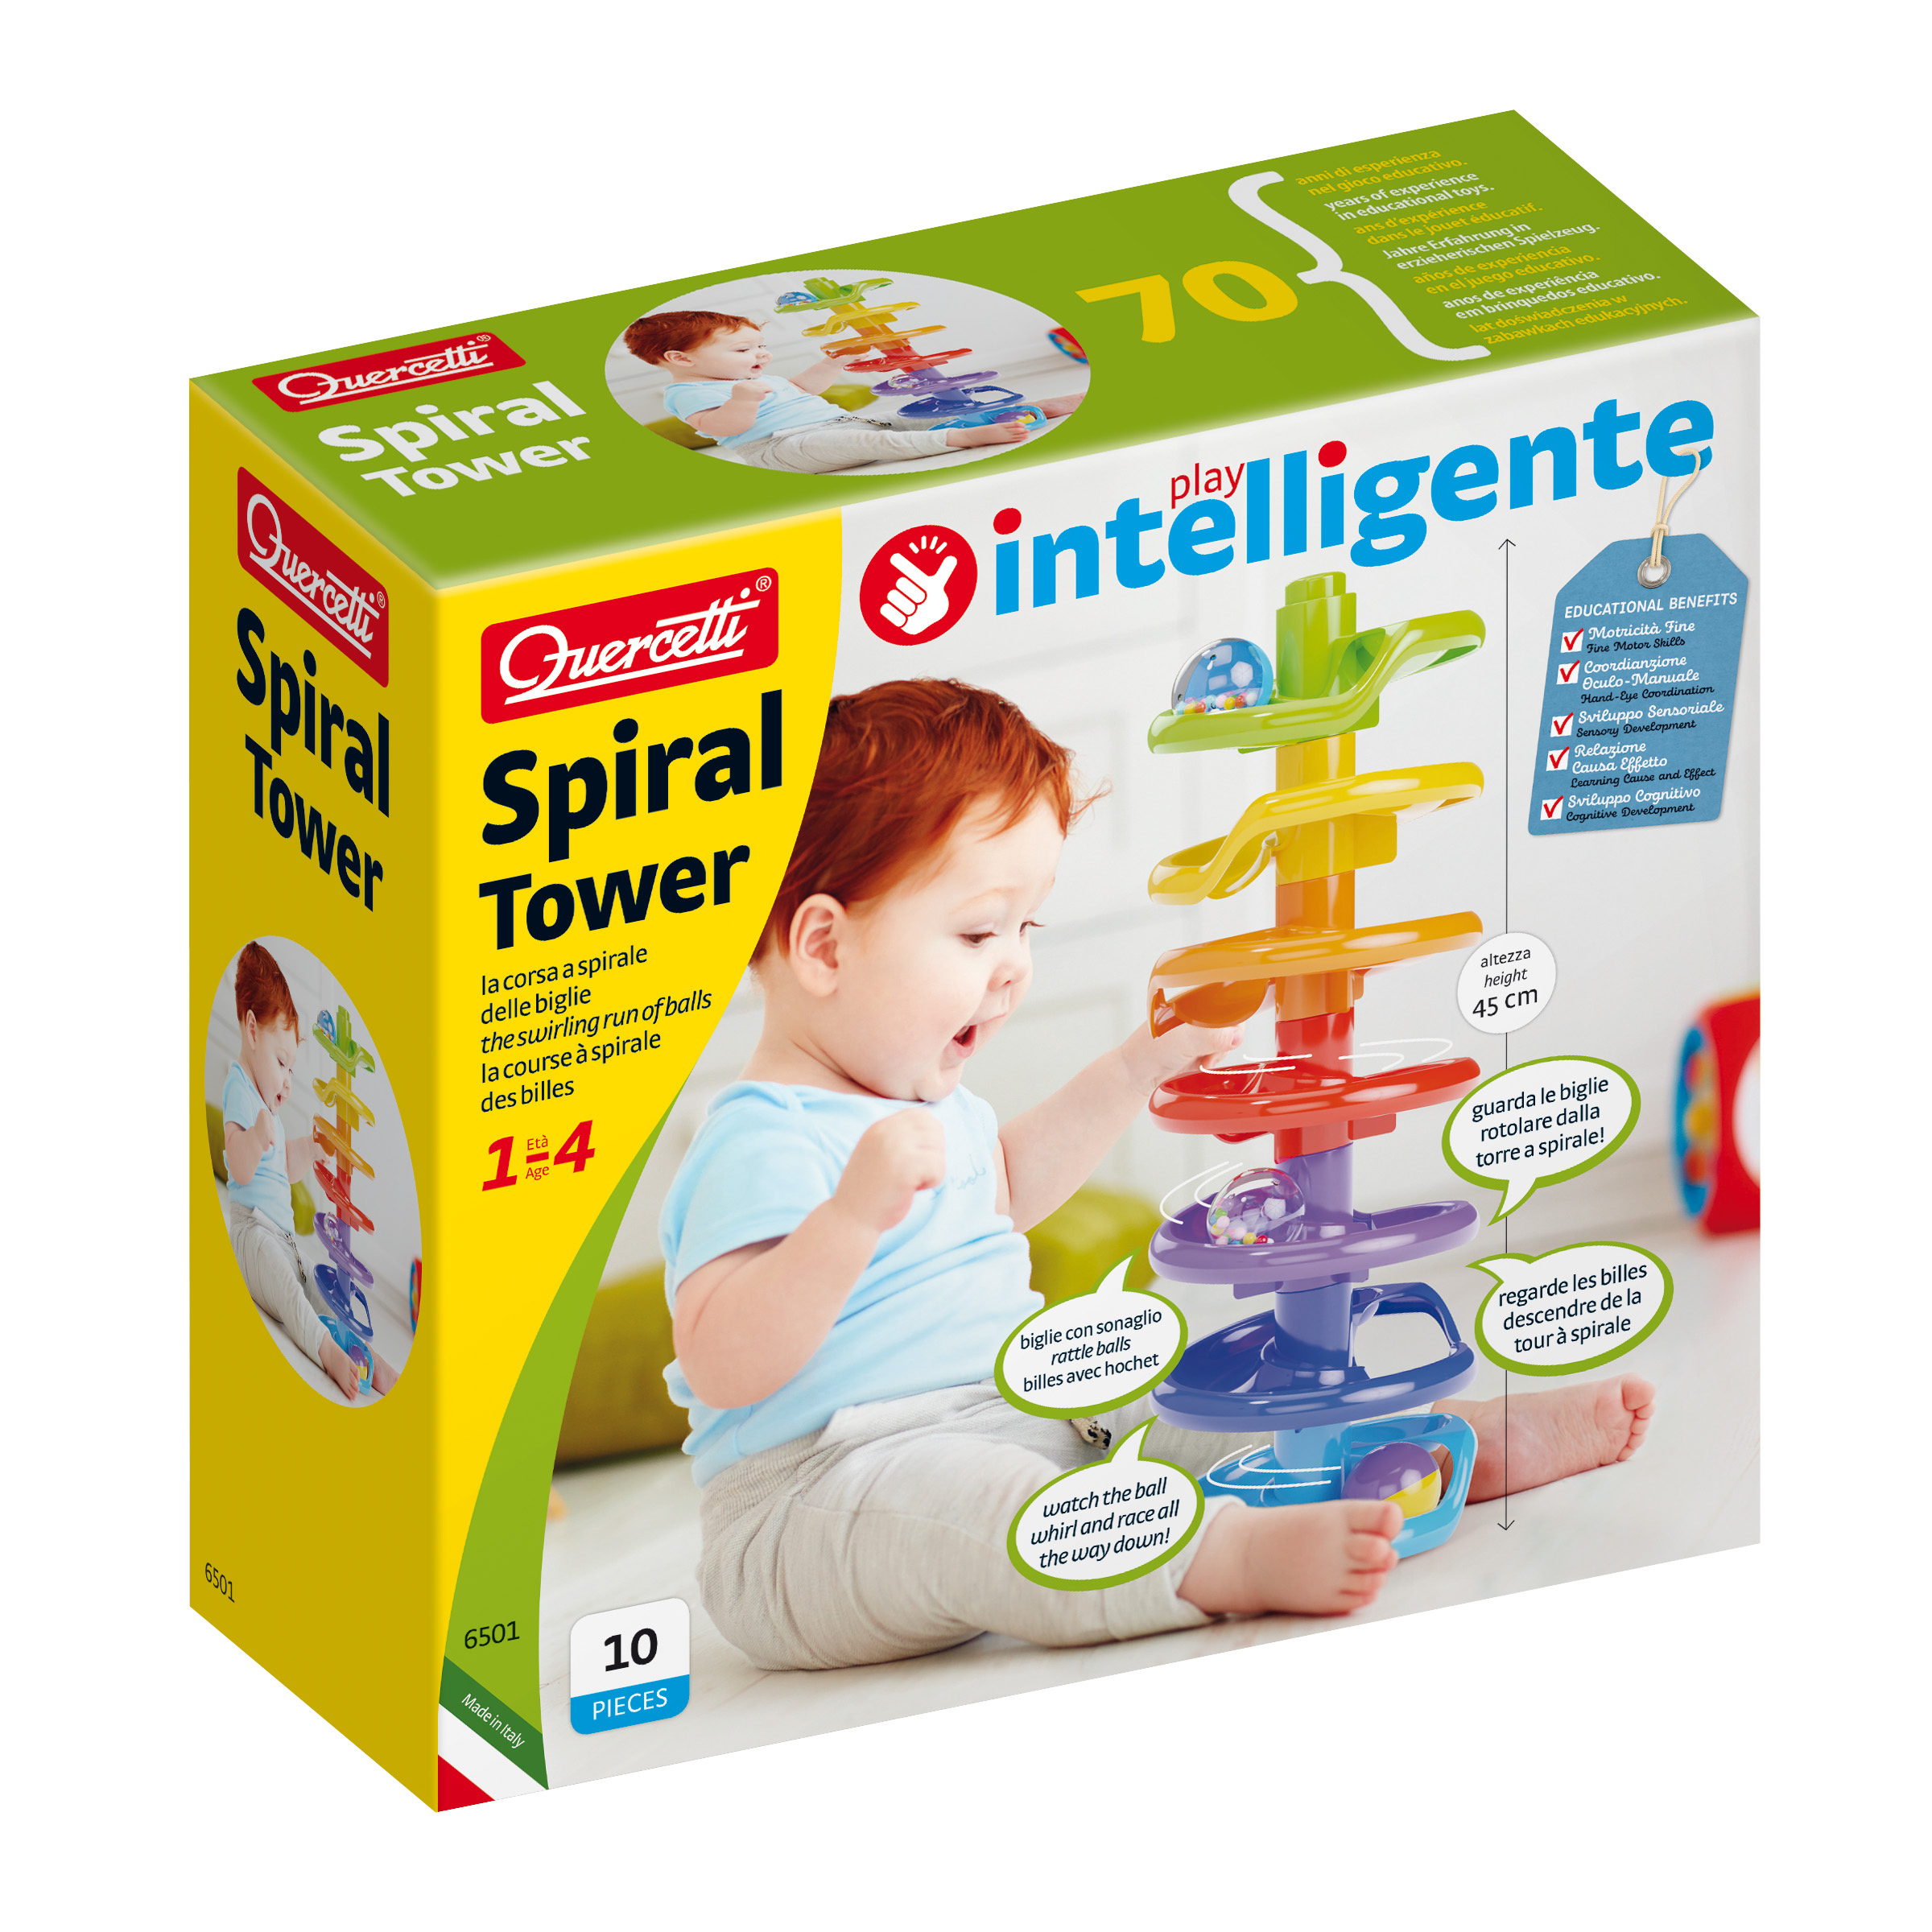 Spiral tower - 